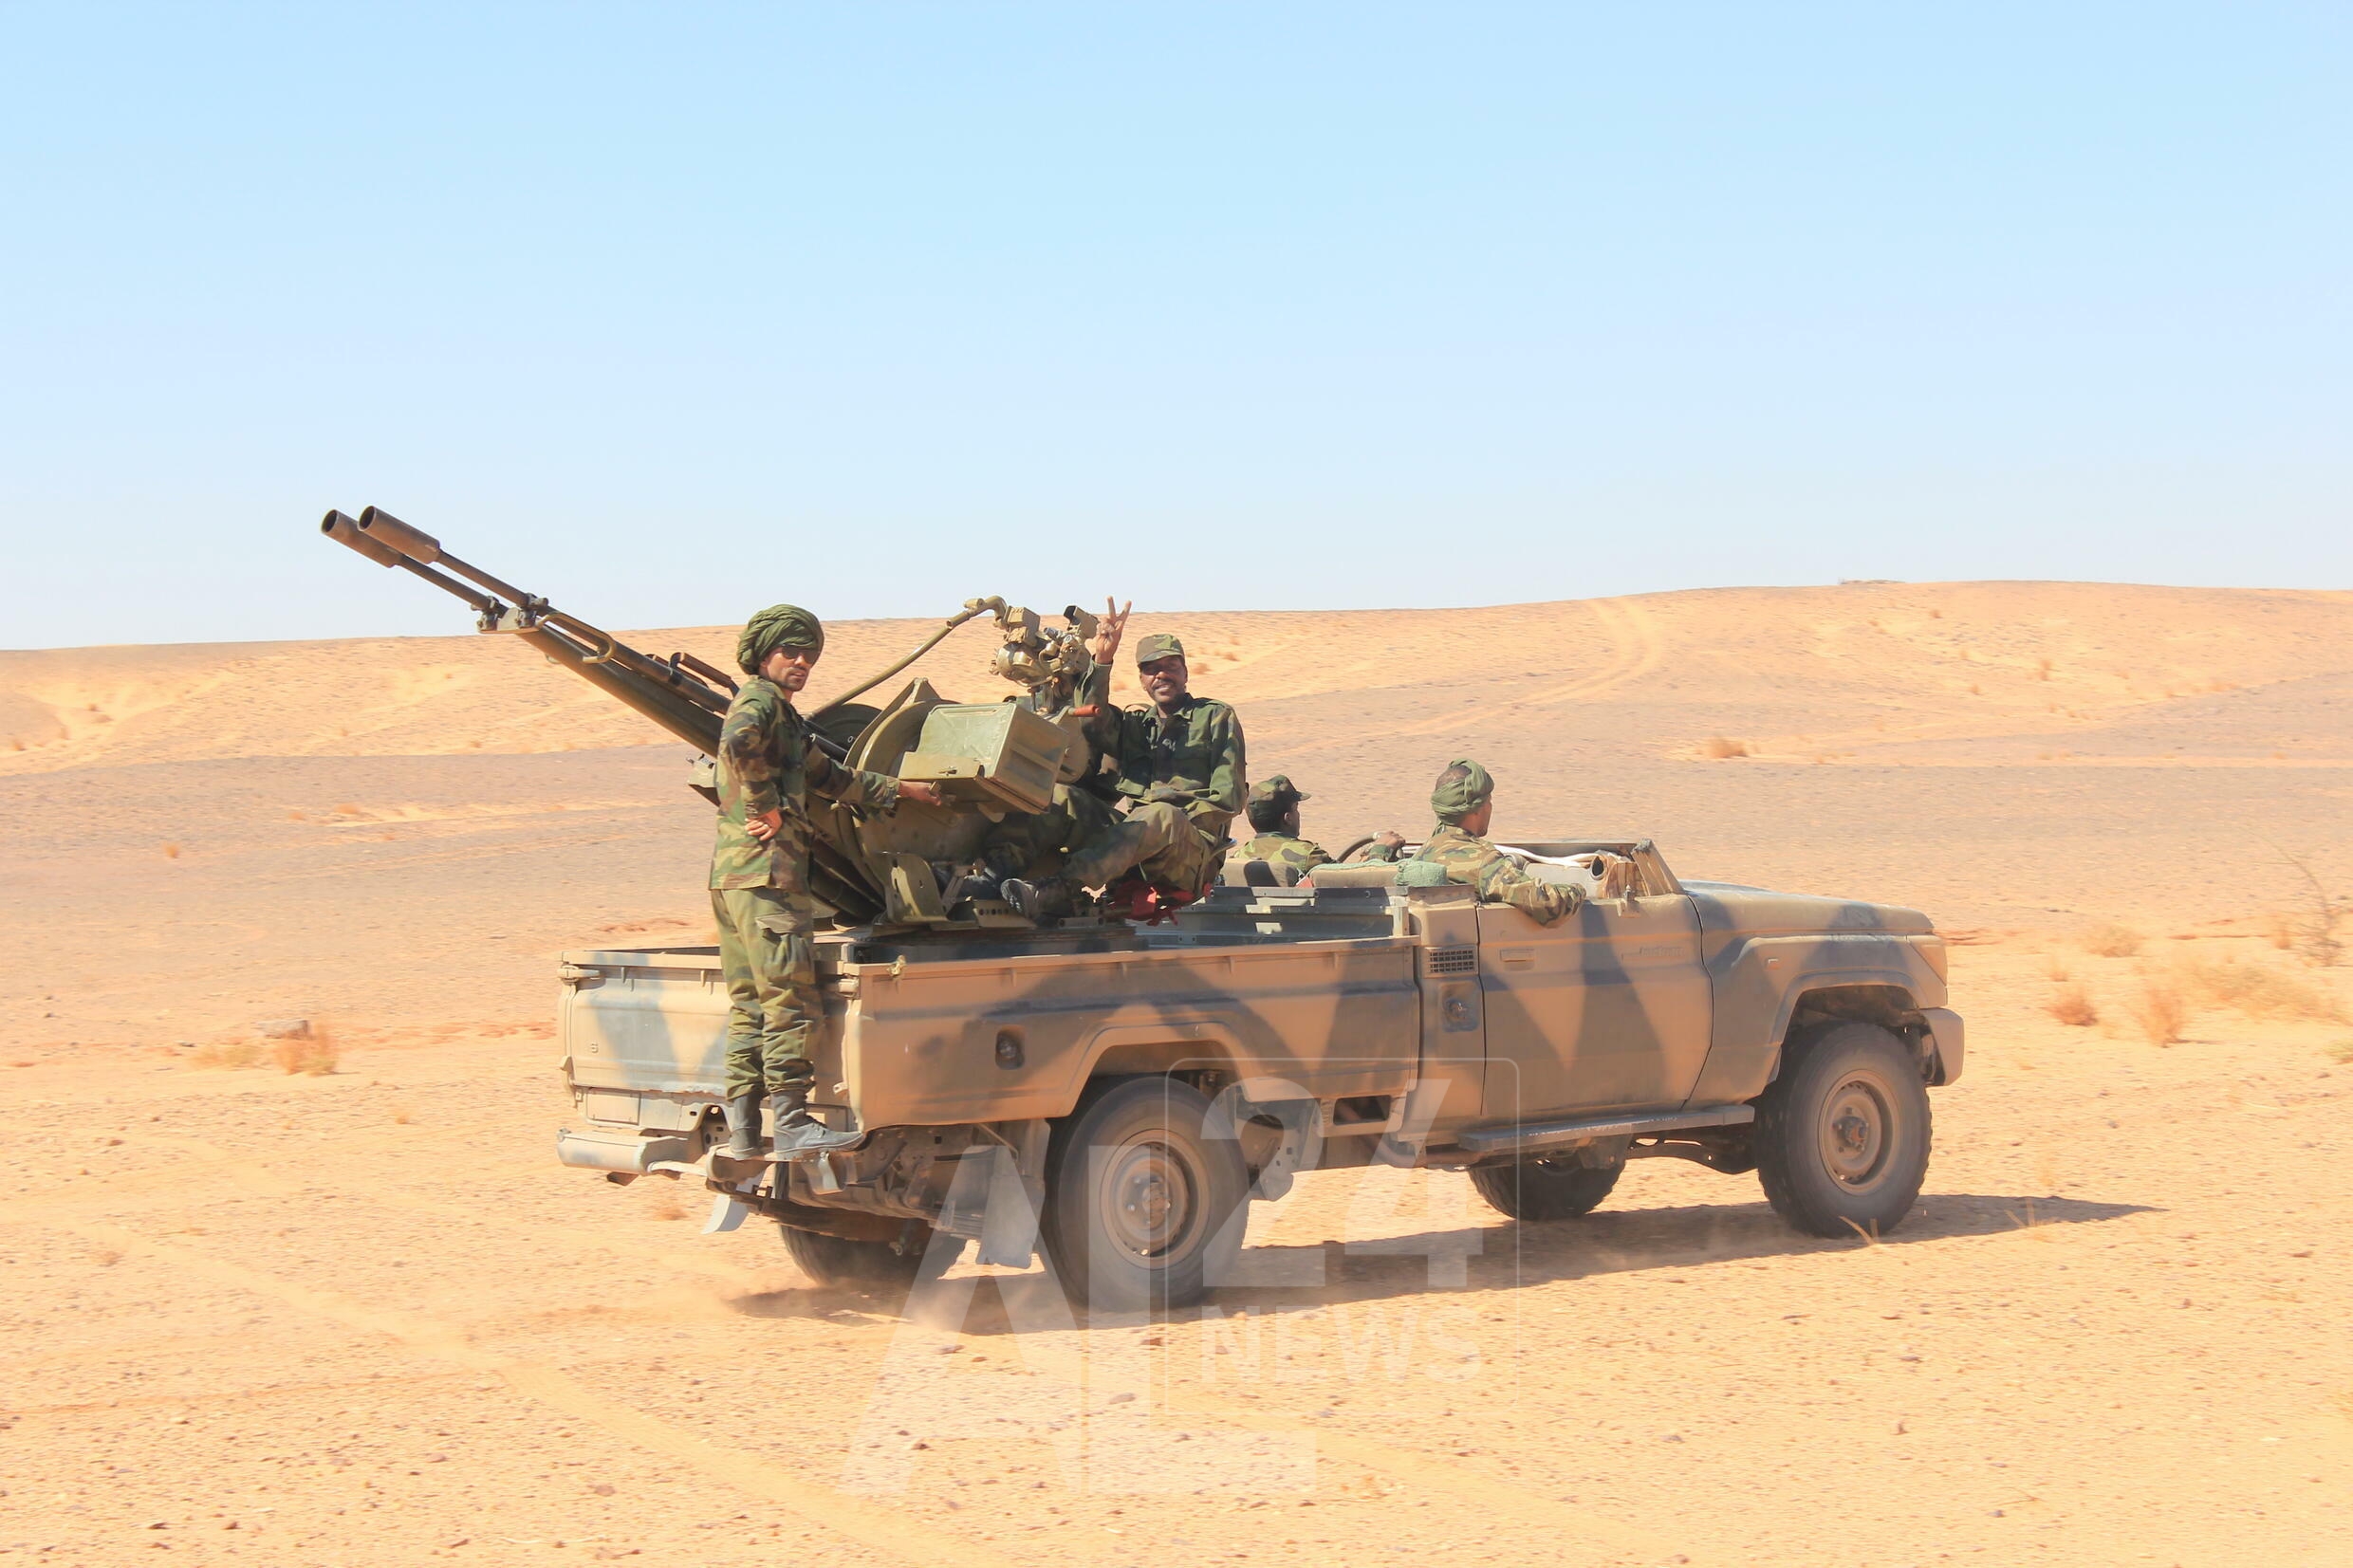 الجيش الصحراوي: خسائر فادحة في الارواح و المعدات بين صفوف الجيش الملكي الجبان